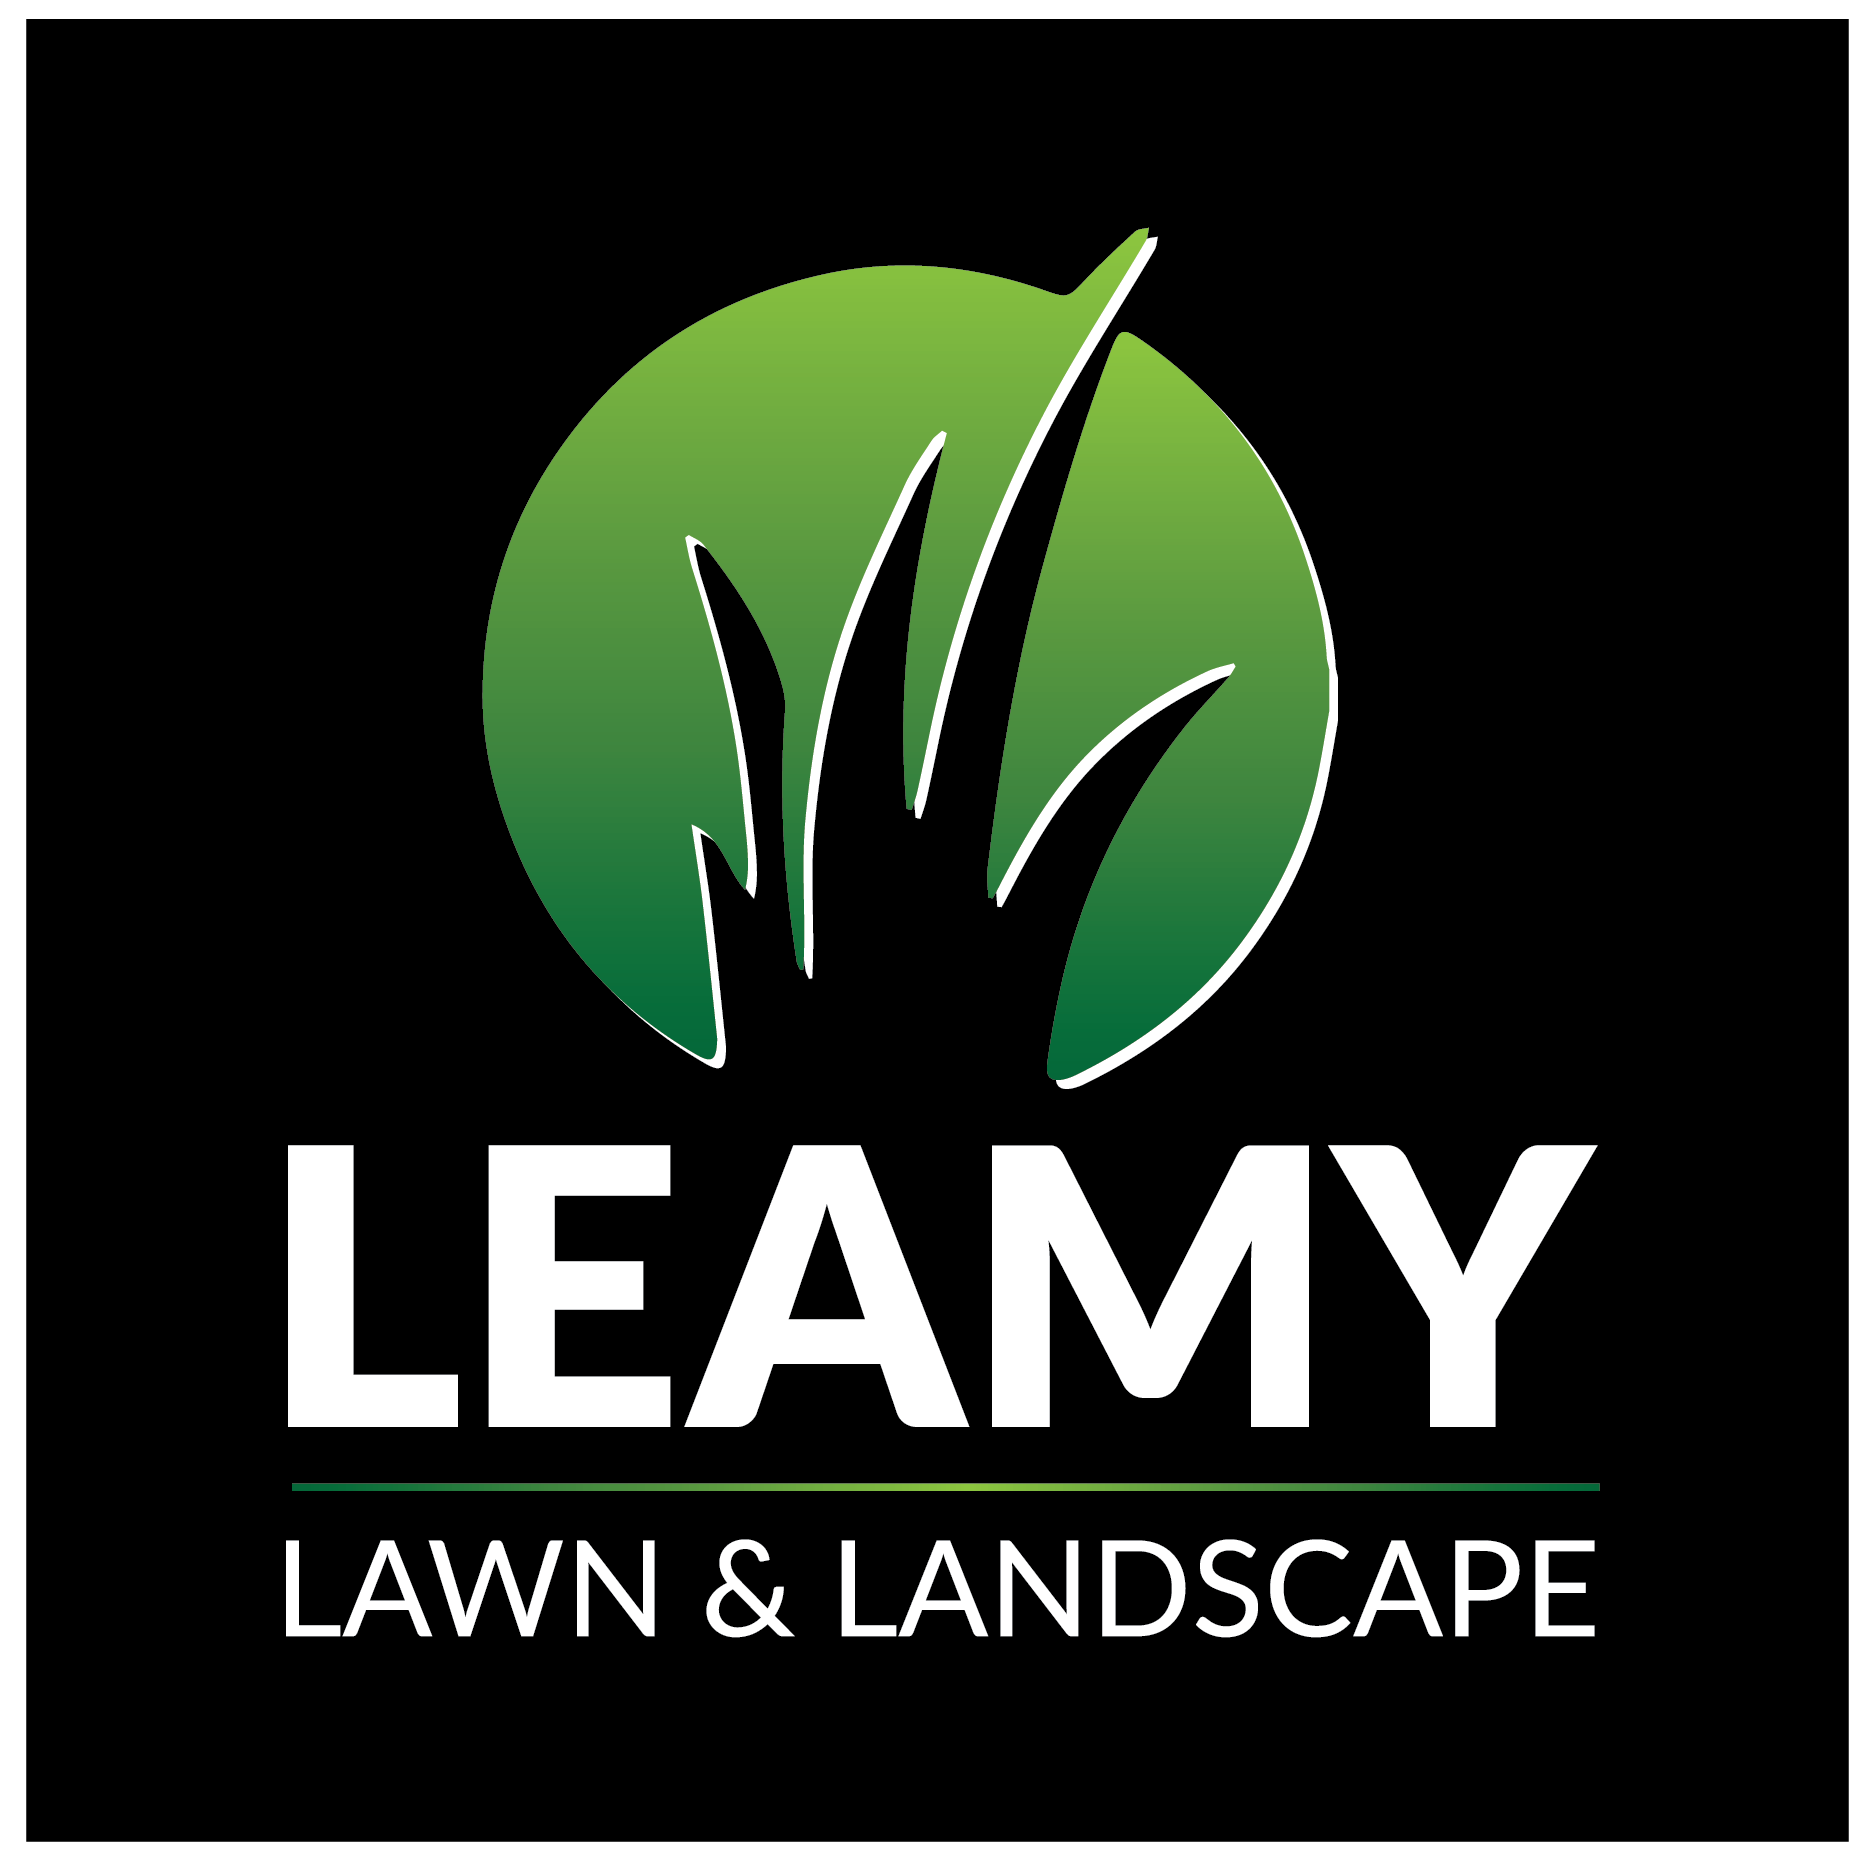 Leamy Lawn